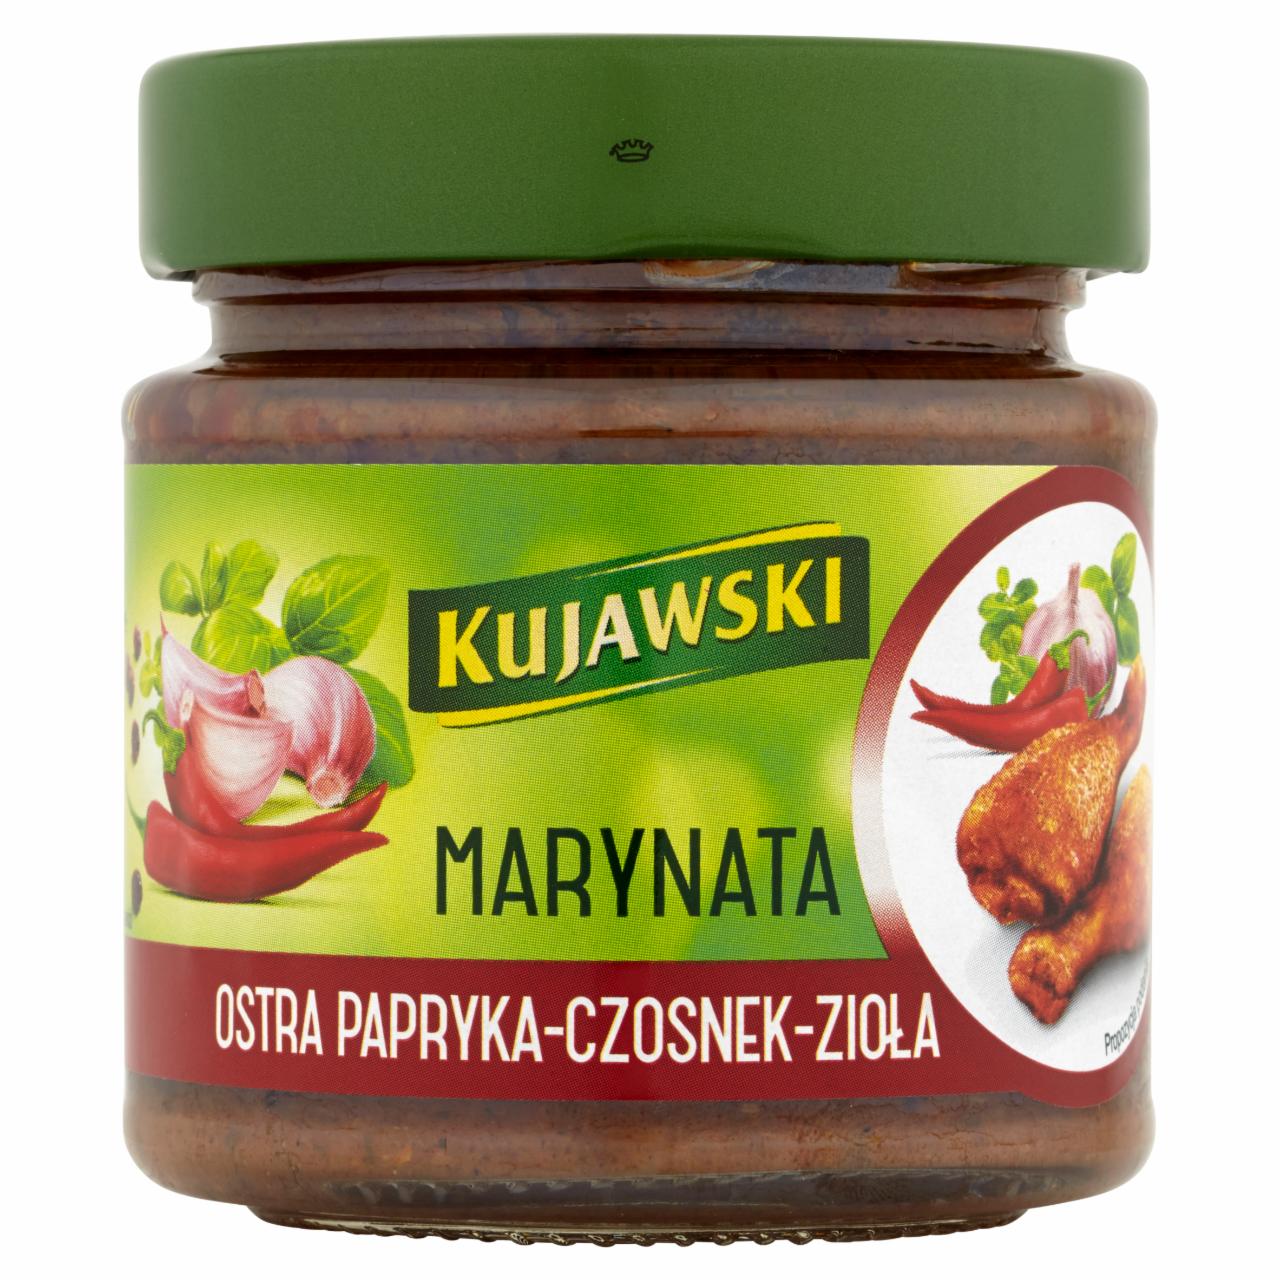 Zdjęcia - Kujawski Marynata Ostra papryka-czosnek-zioła 180 ml